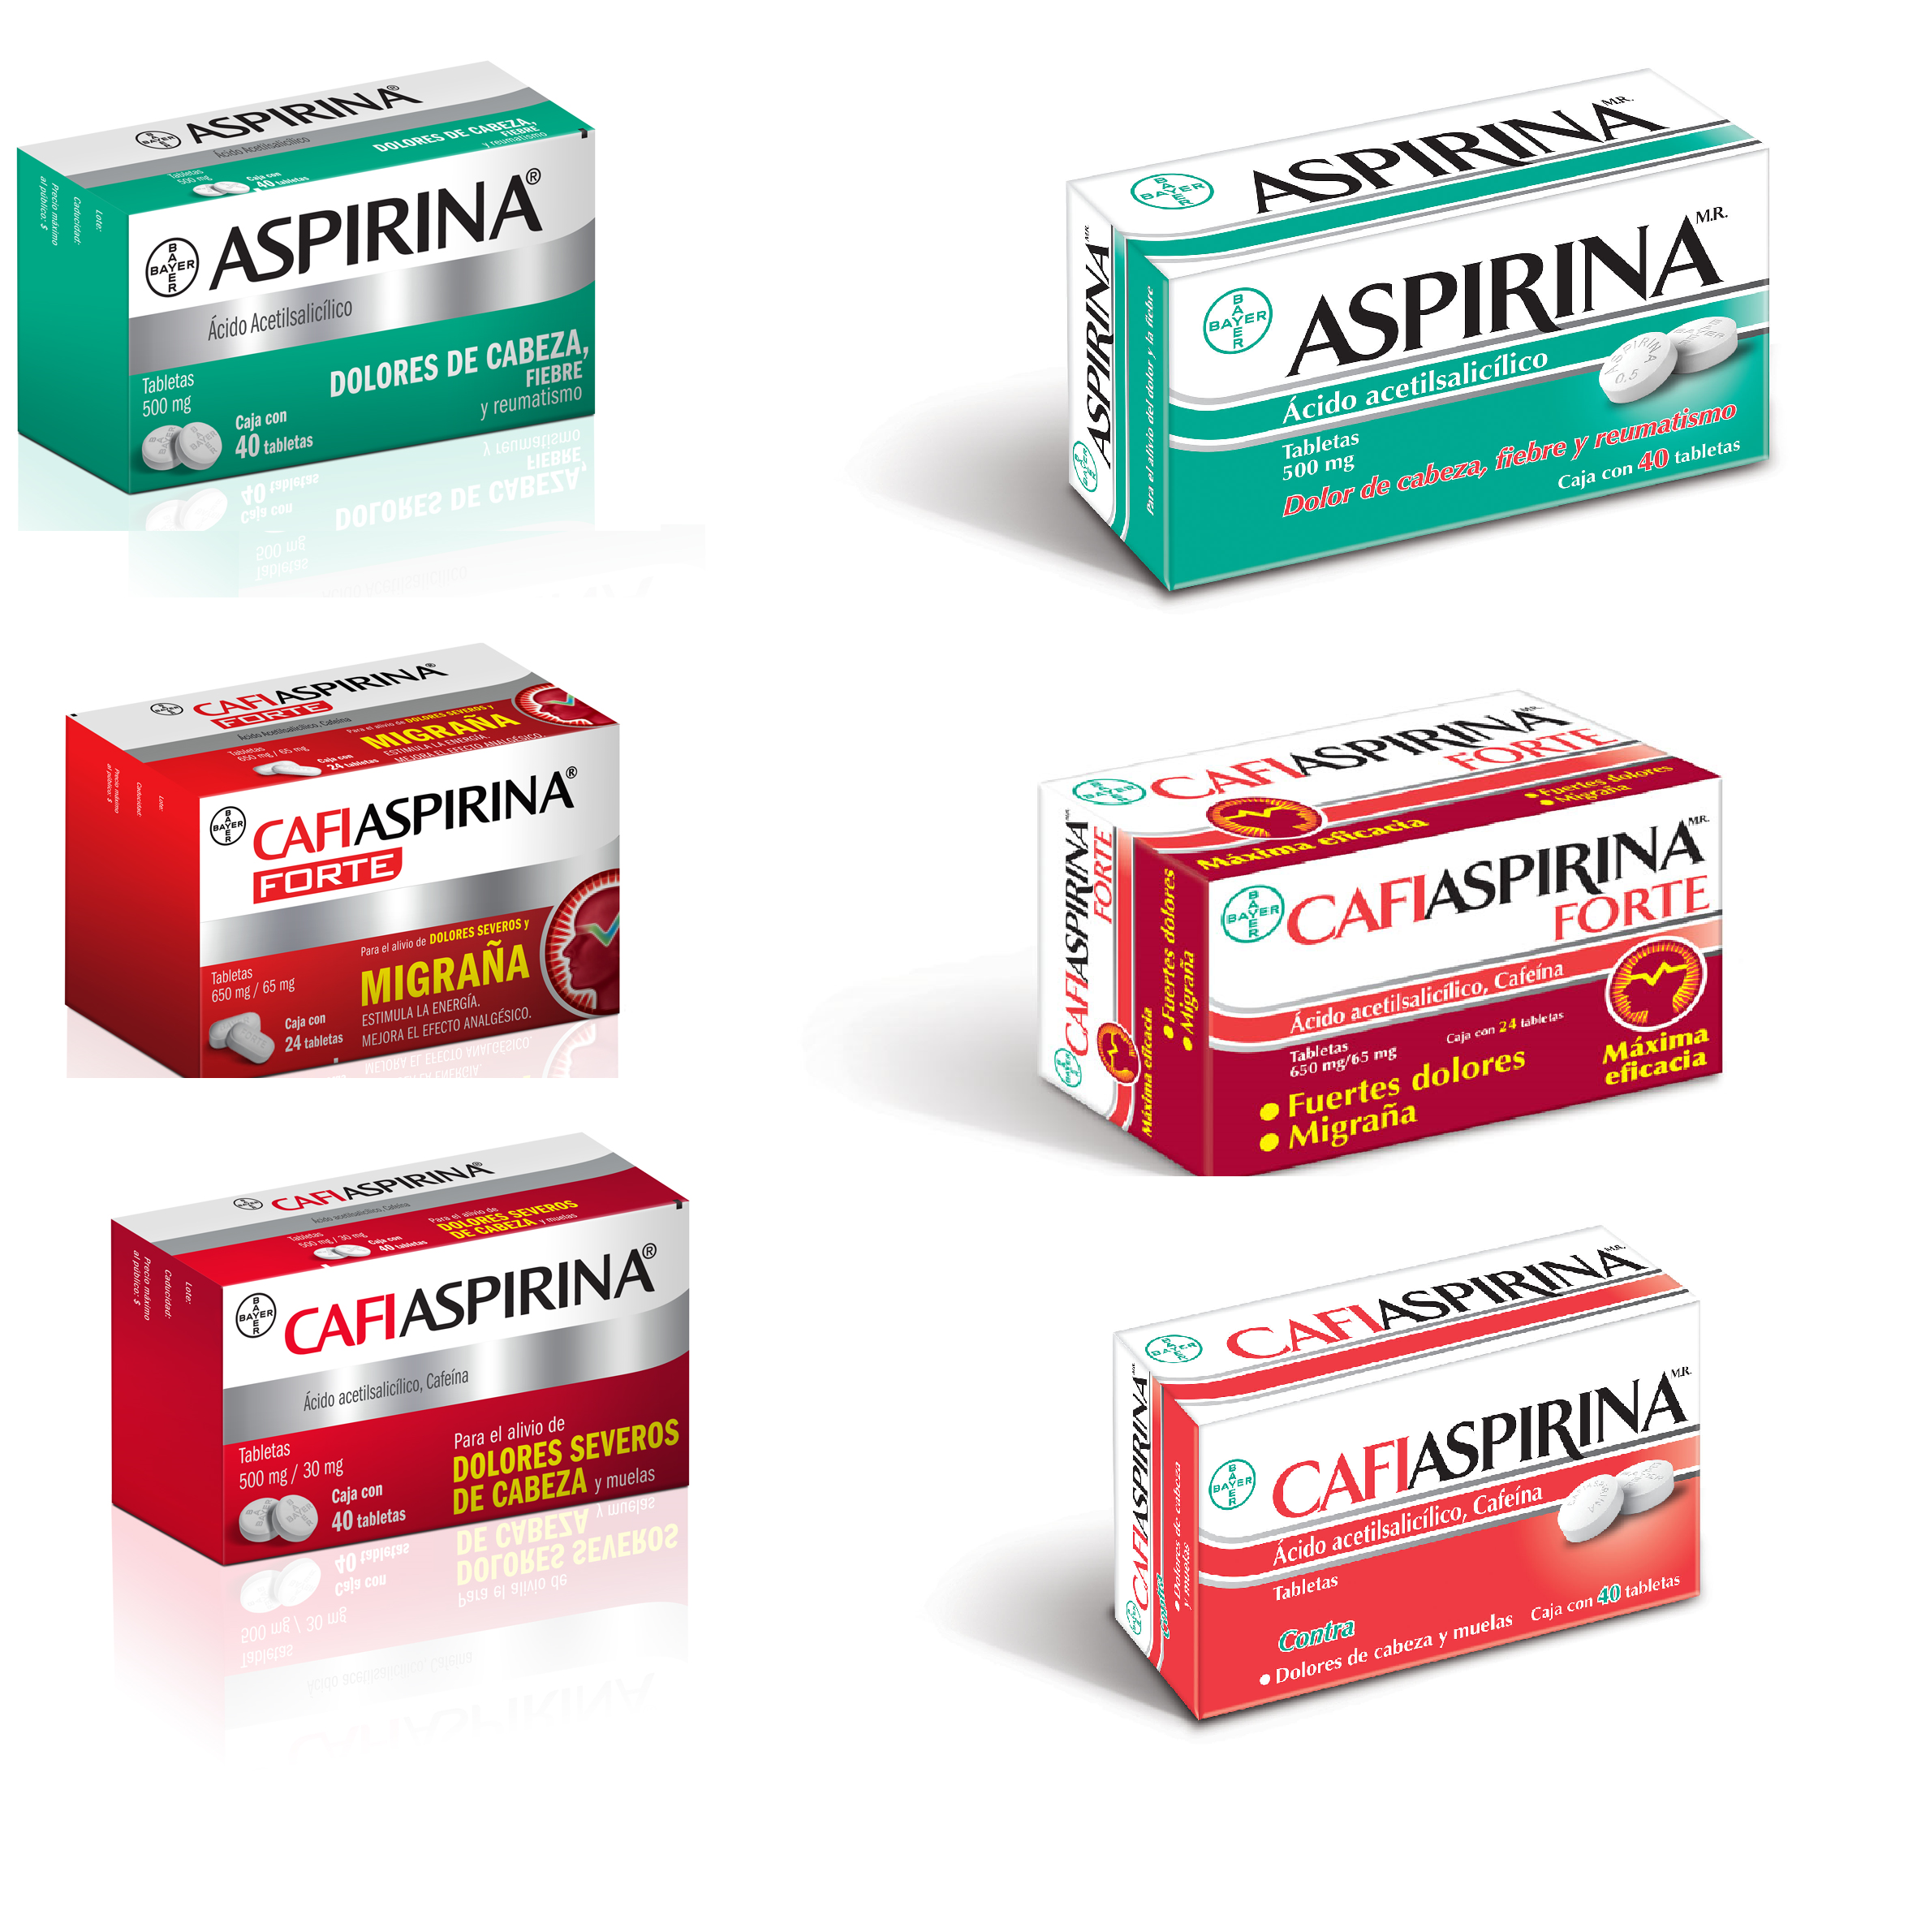 Un nuevo empaque de Aspirina se lanzó recientemente, con el objetivo de facilitar al público la elección del producto más conveniente para su tipo de dolor.